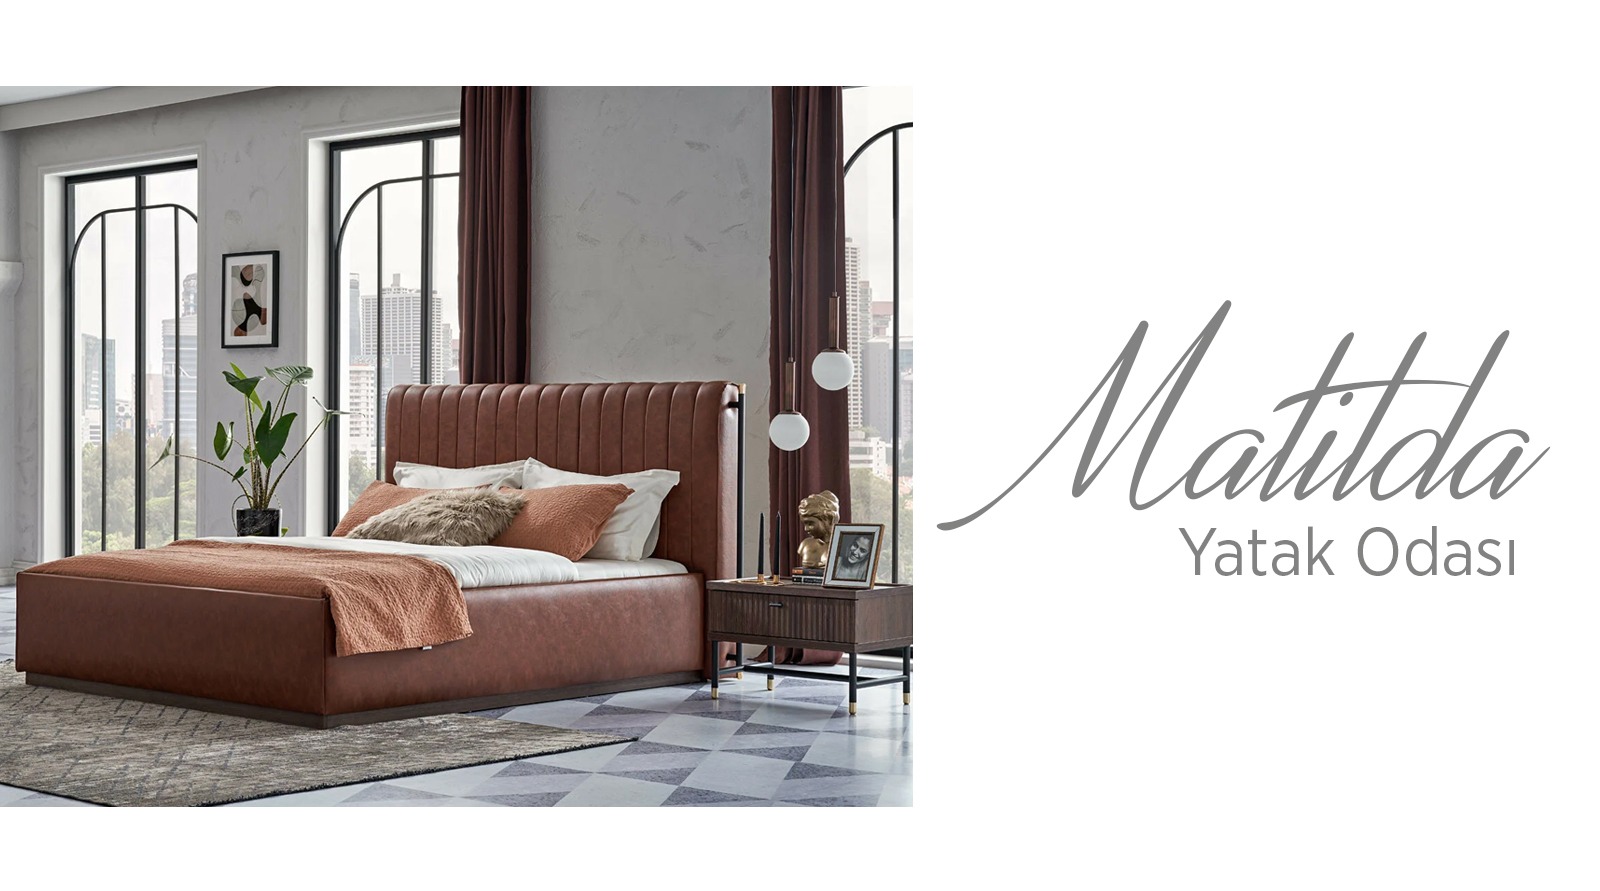 X 上的 Doğtaş：「Matilda yatak odası takımı, işlevsel yapısı ve göz alıcı  tasarımı ile tüm beklentilerinizi karşılarken, bazalı ve karyola  alternatifleriyle seçimi size bırakıyor. Dolap seçenekleri, sundukları  depolama kolaylığı ile yatak odanızda ...